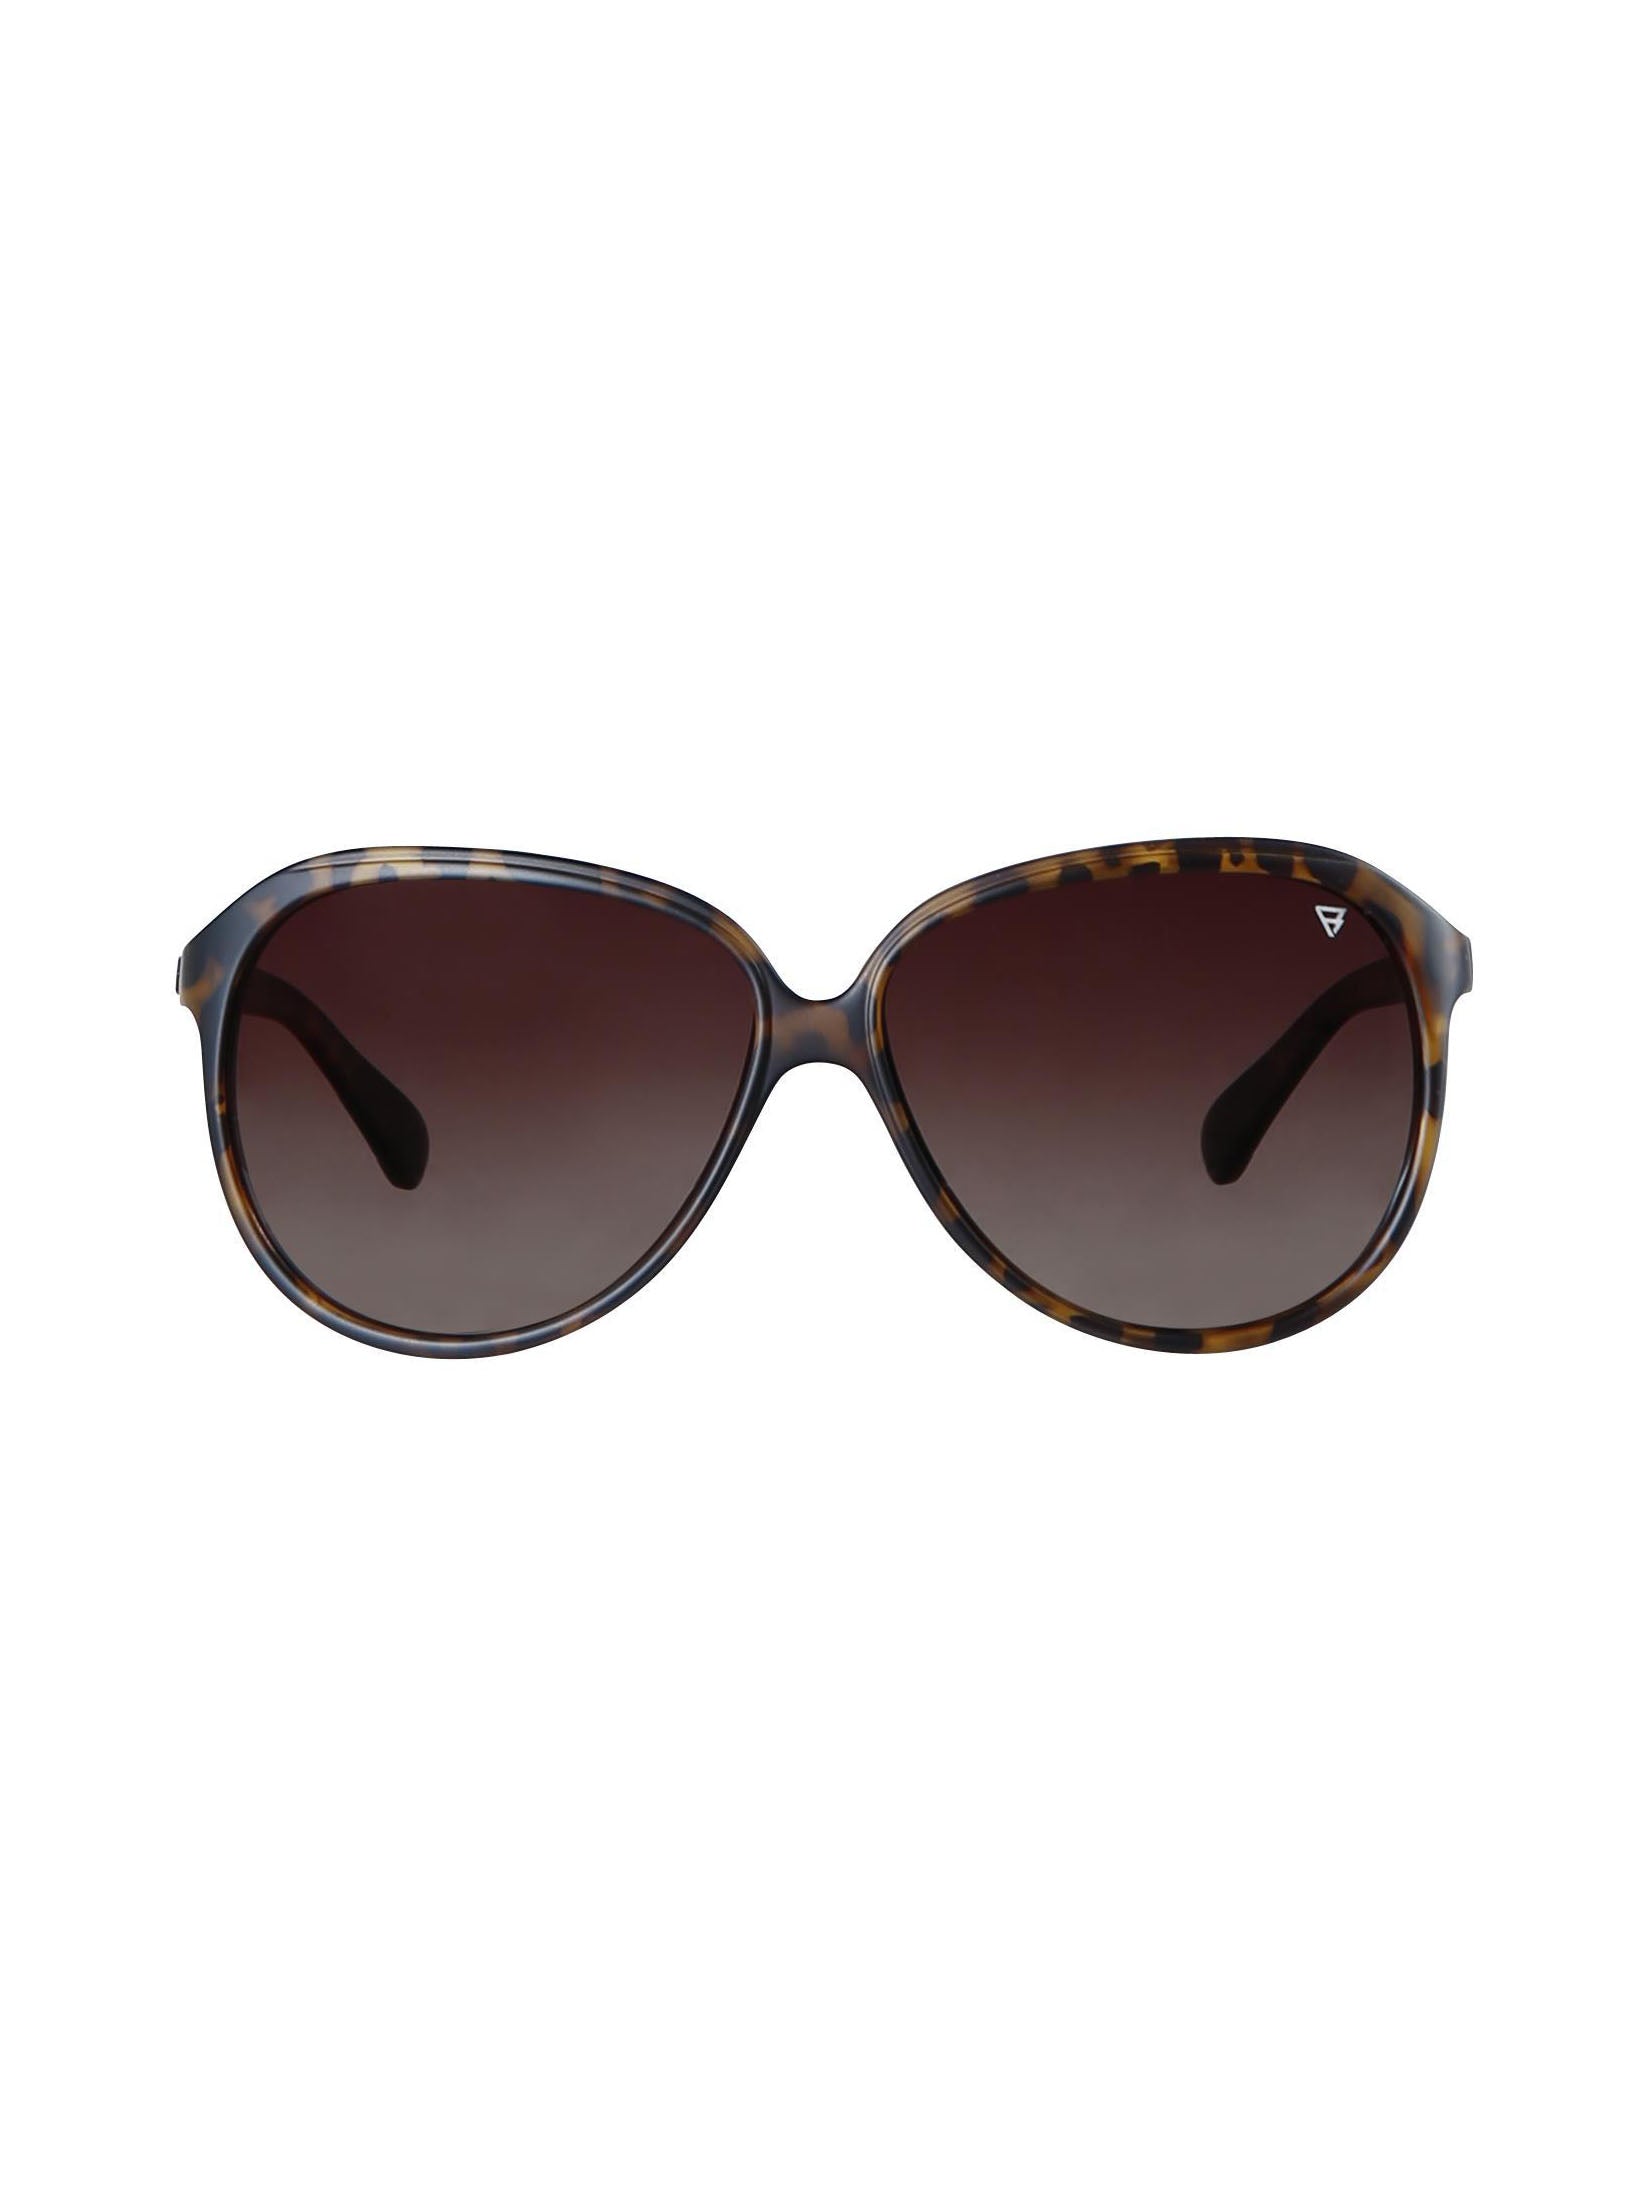 Hurange-2 Women Sunglasses | Brown